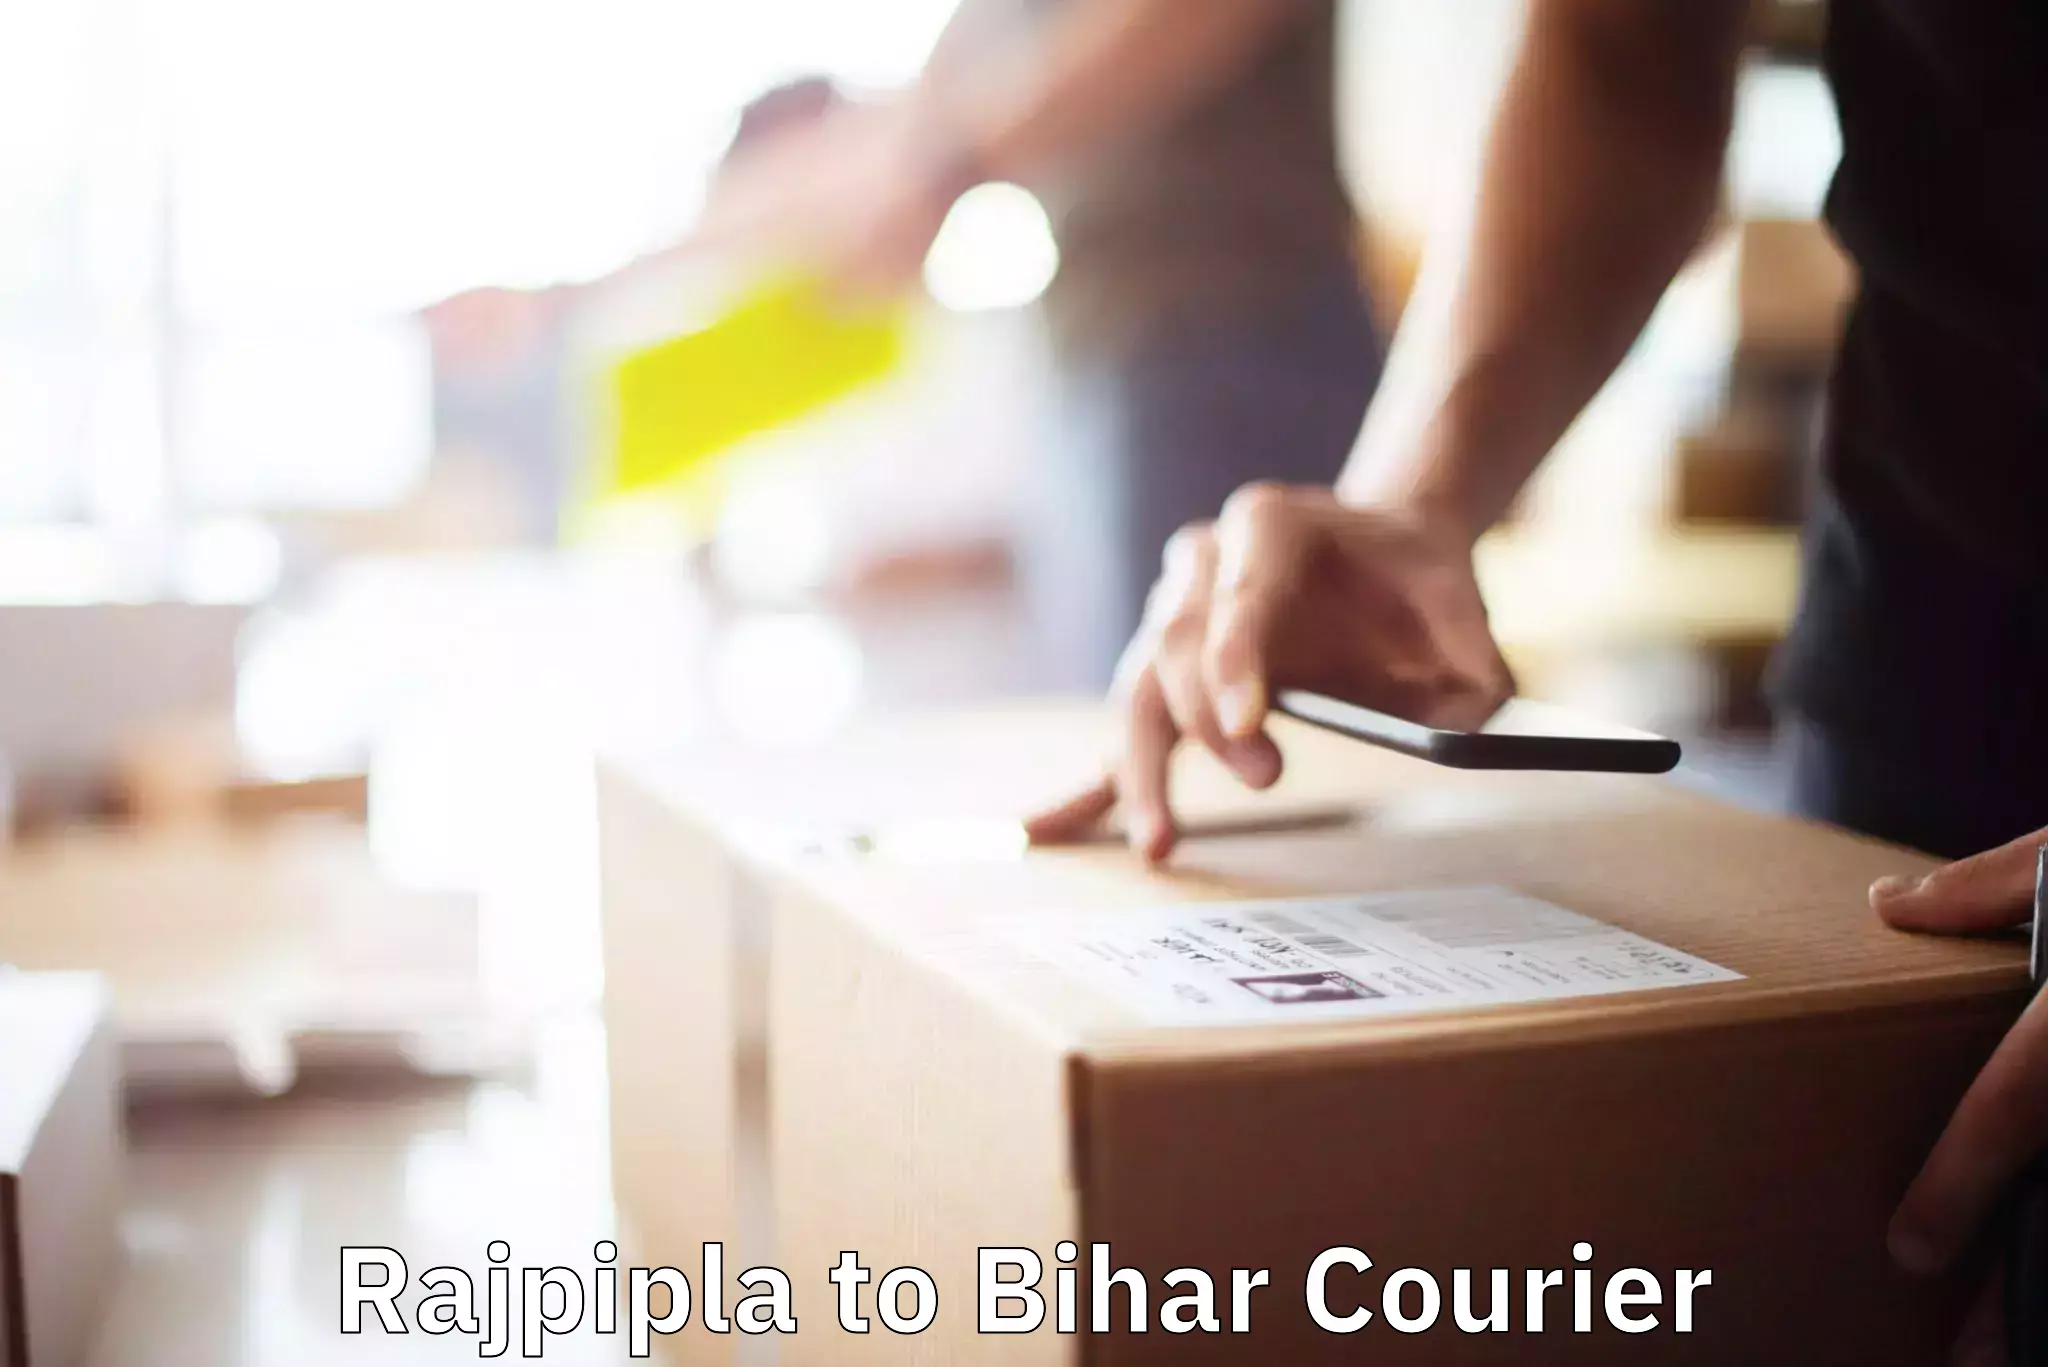 Furniture transport professionals Rajpipla to Bihar